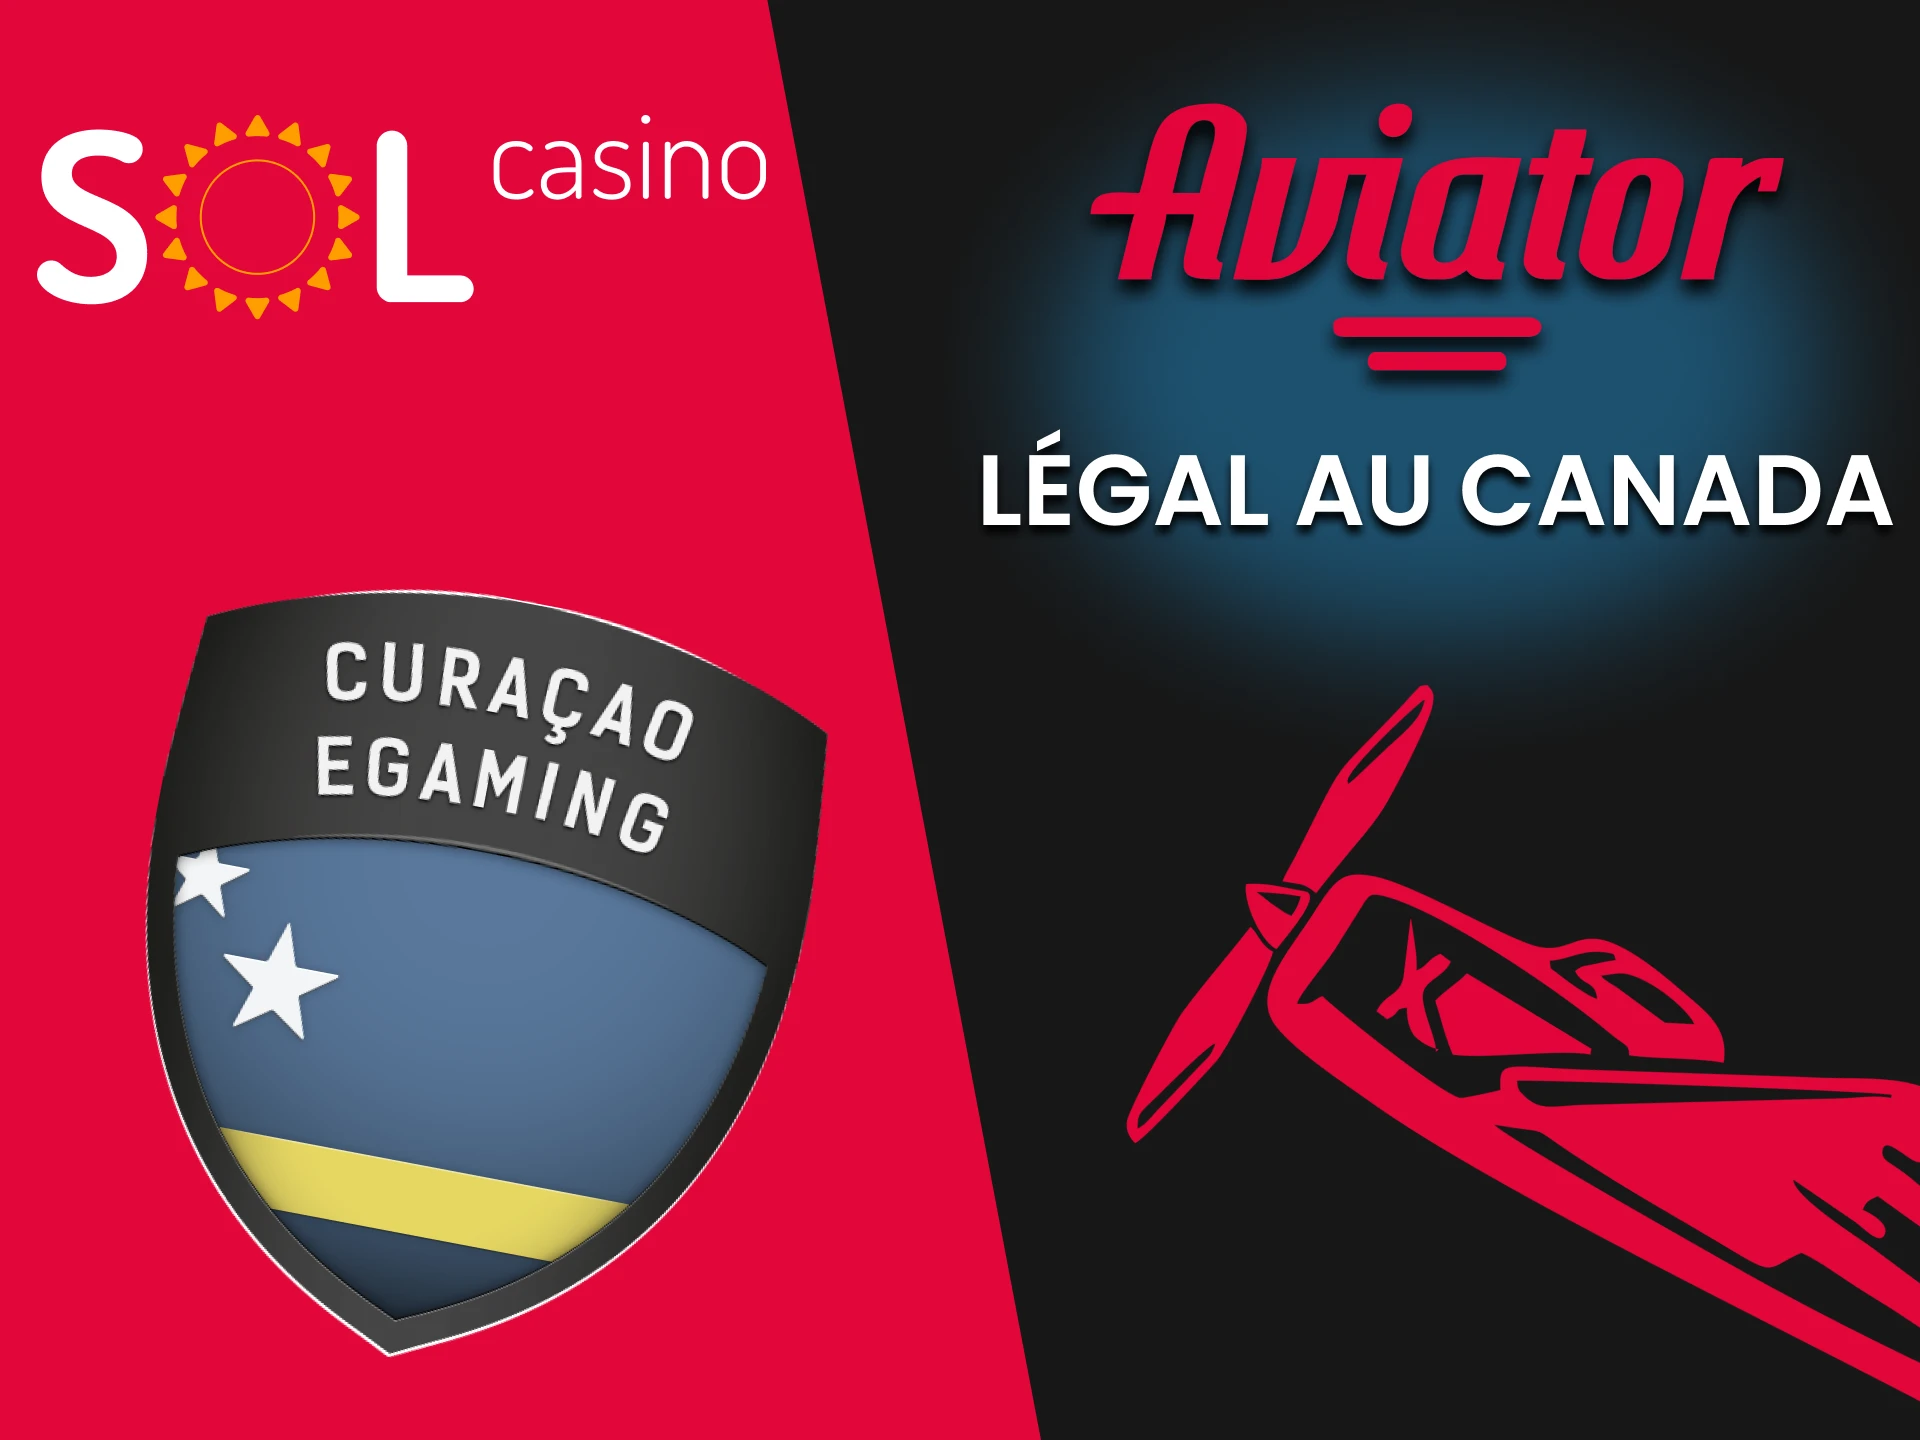 Sol Casino est légal pour jouer à Aviator.